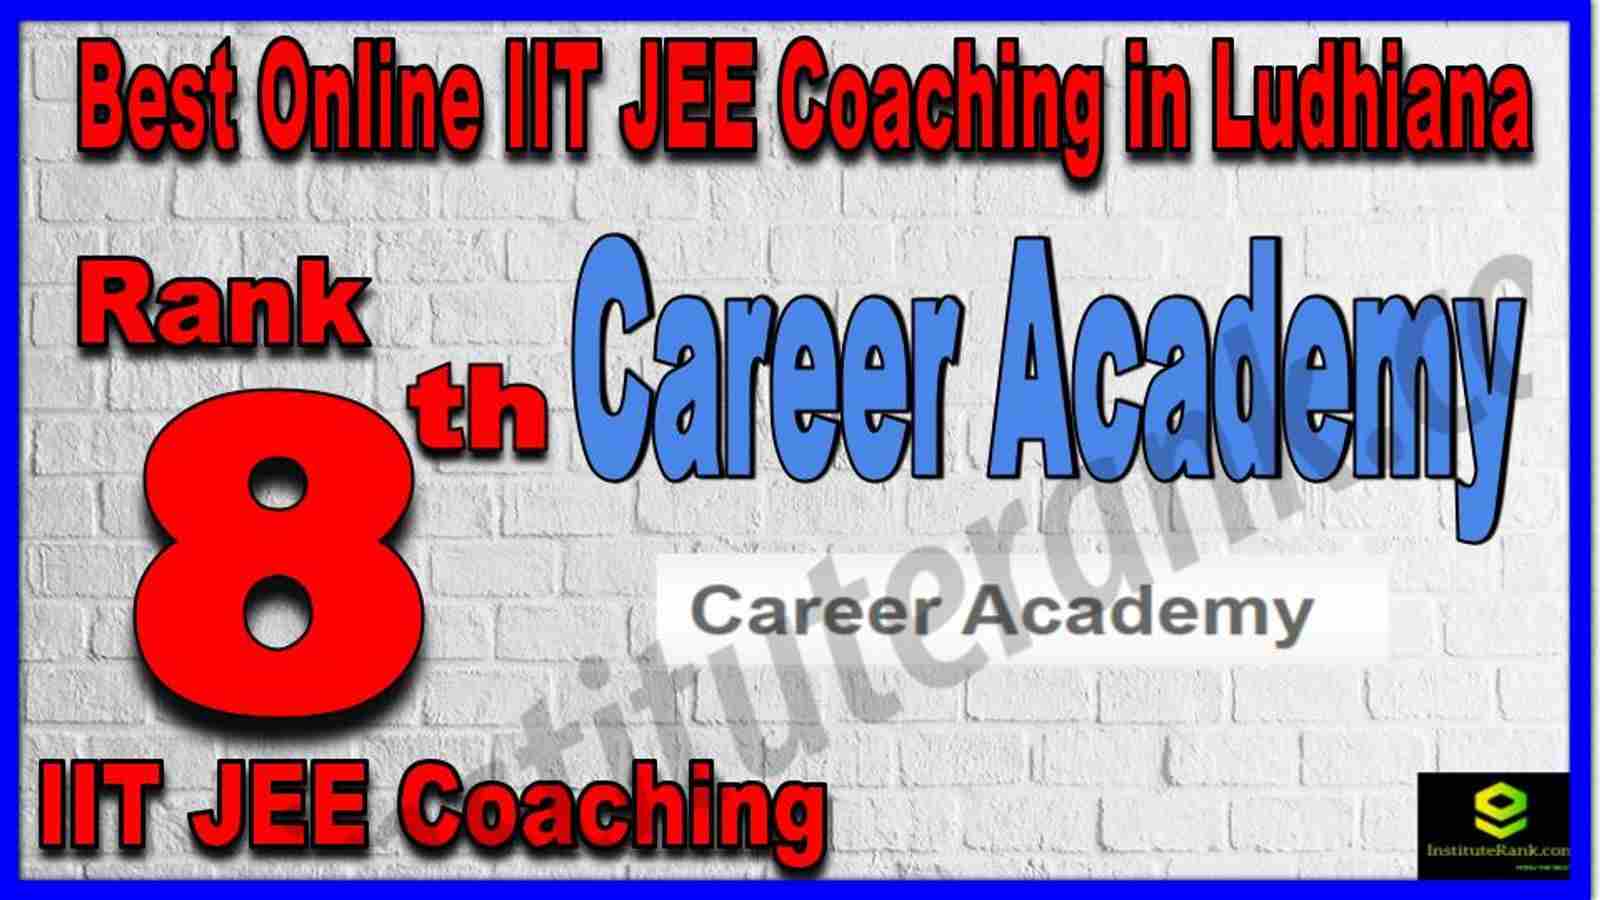 Rank 8th Best Online IIT JEE Coaching in Ludhiana